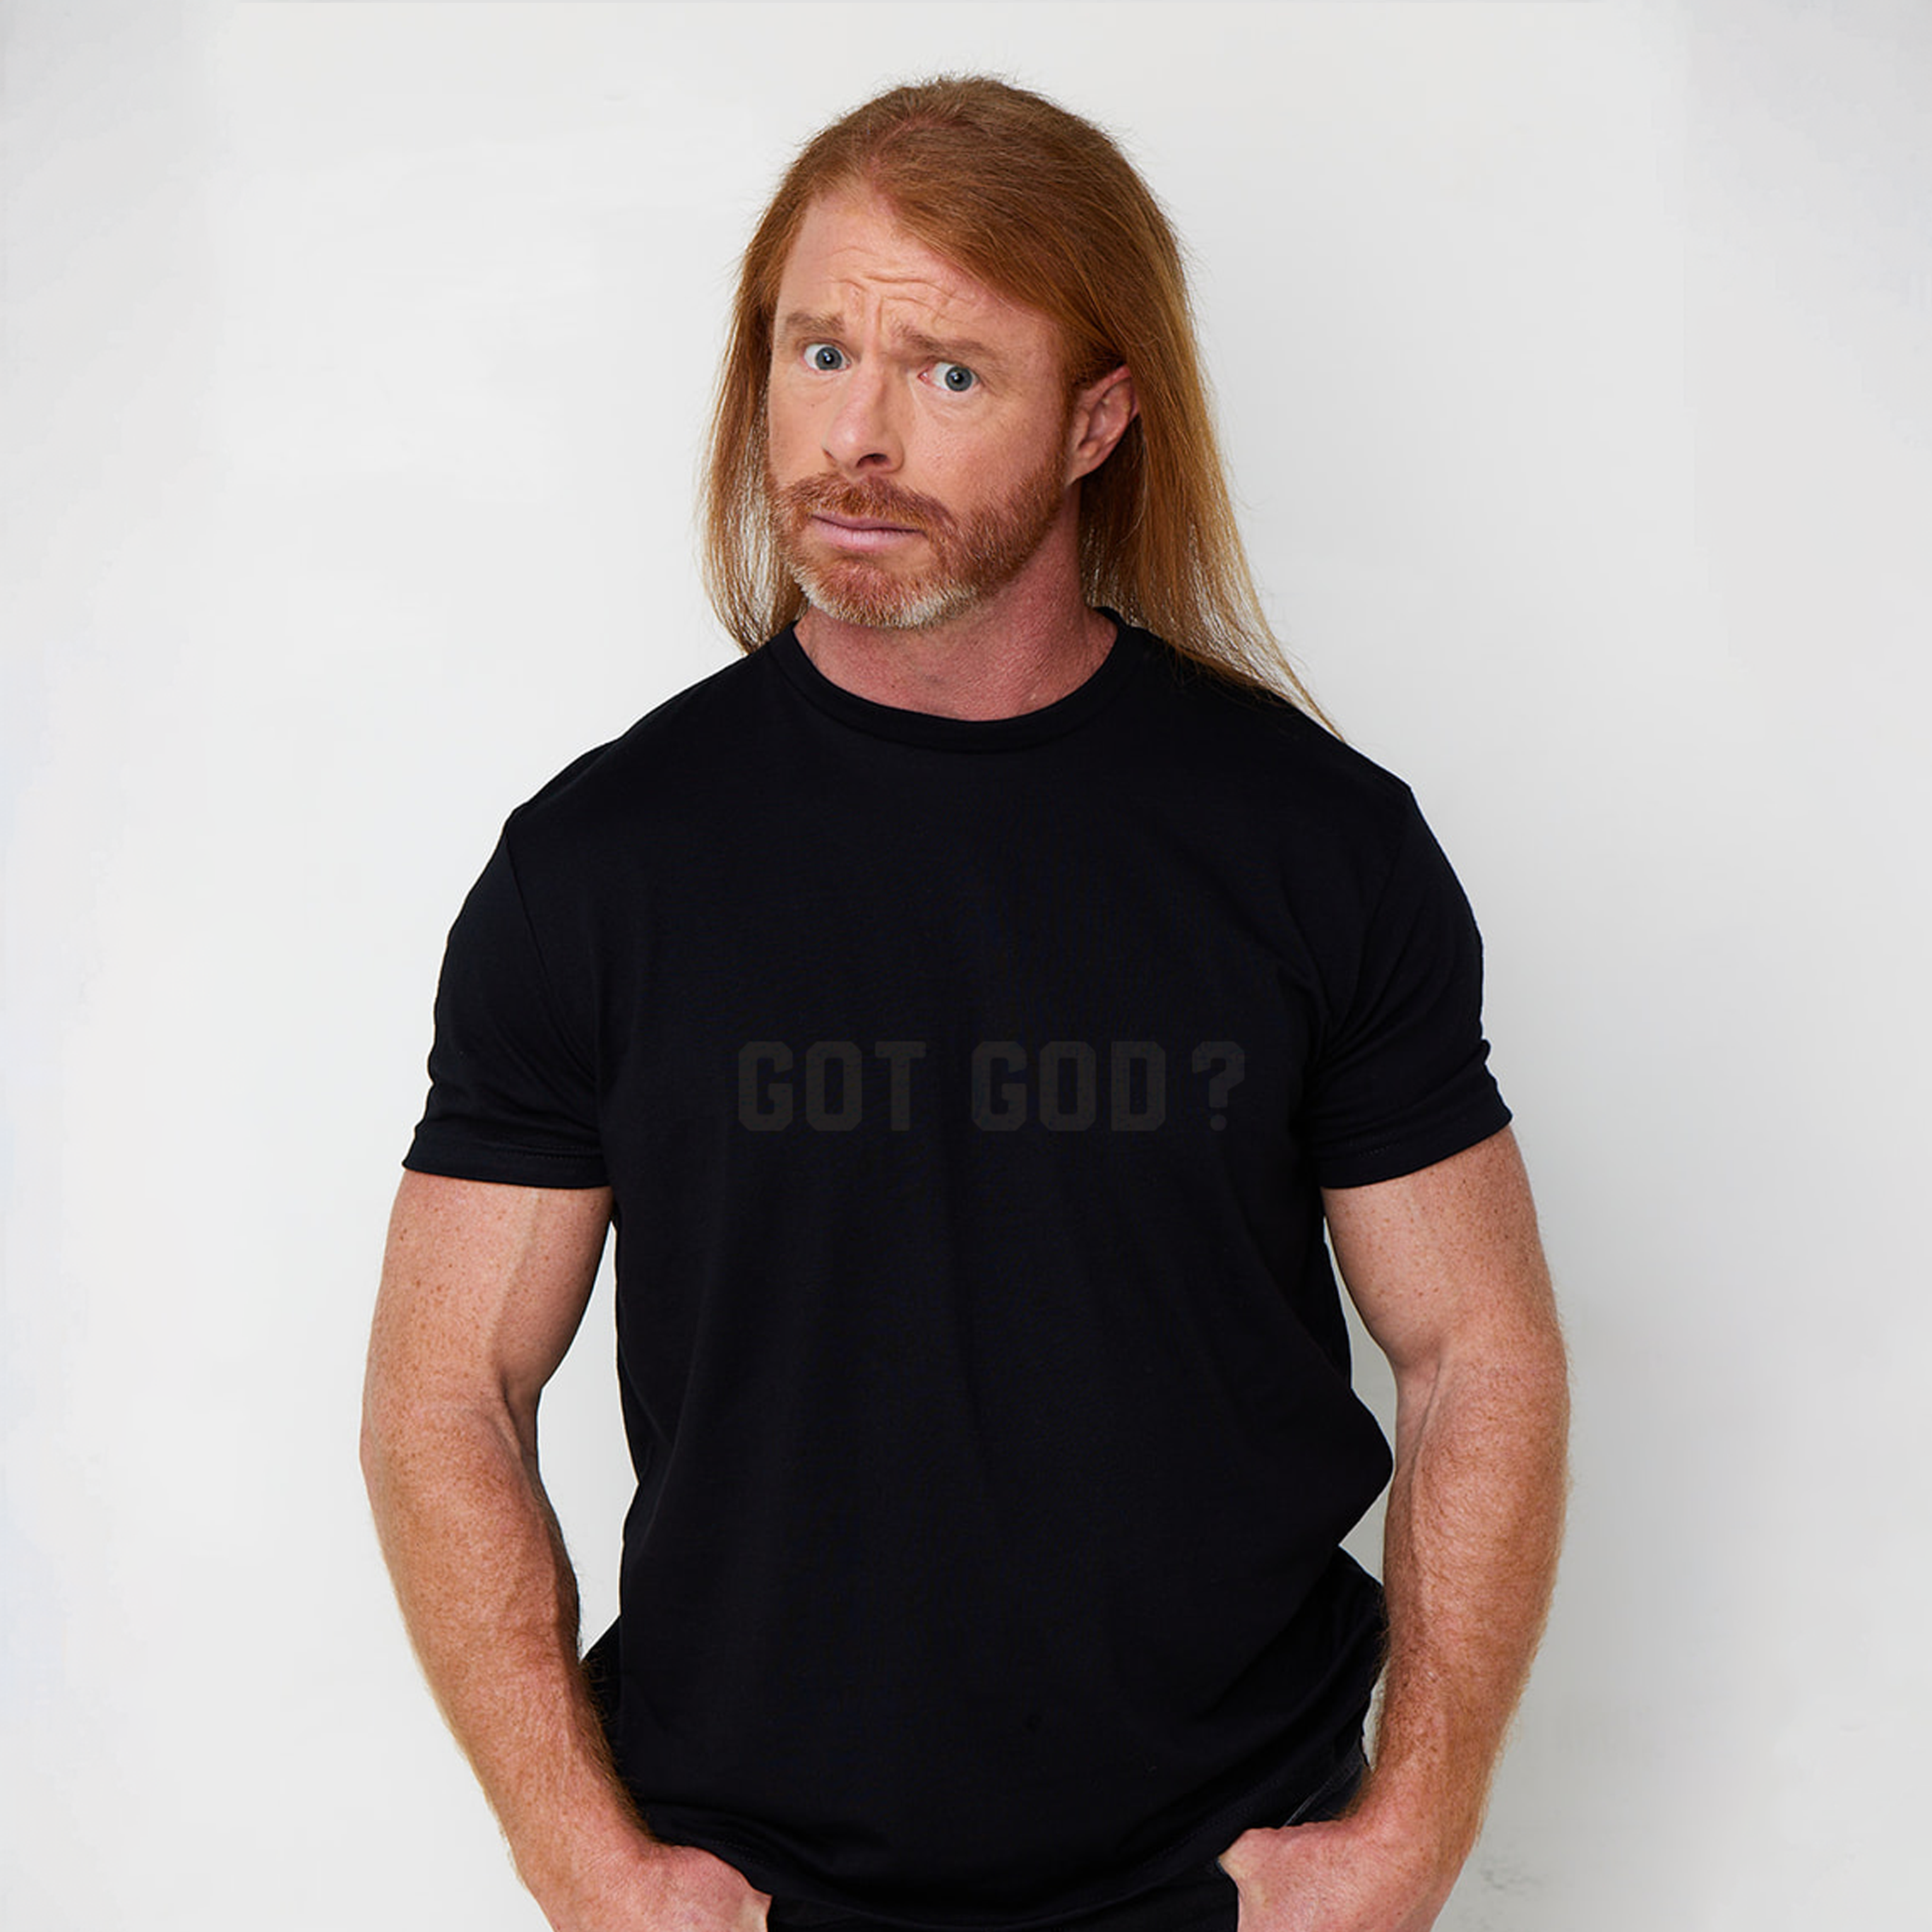 Got God? T-shirt